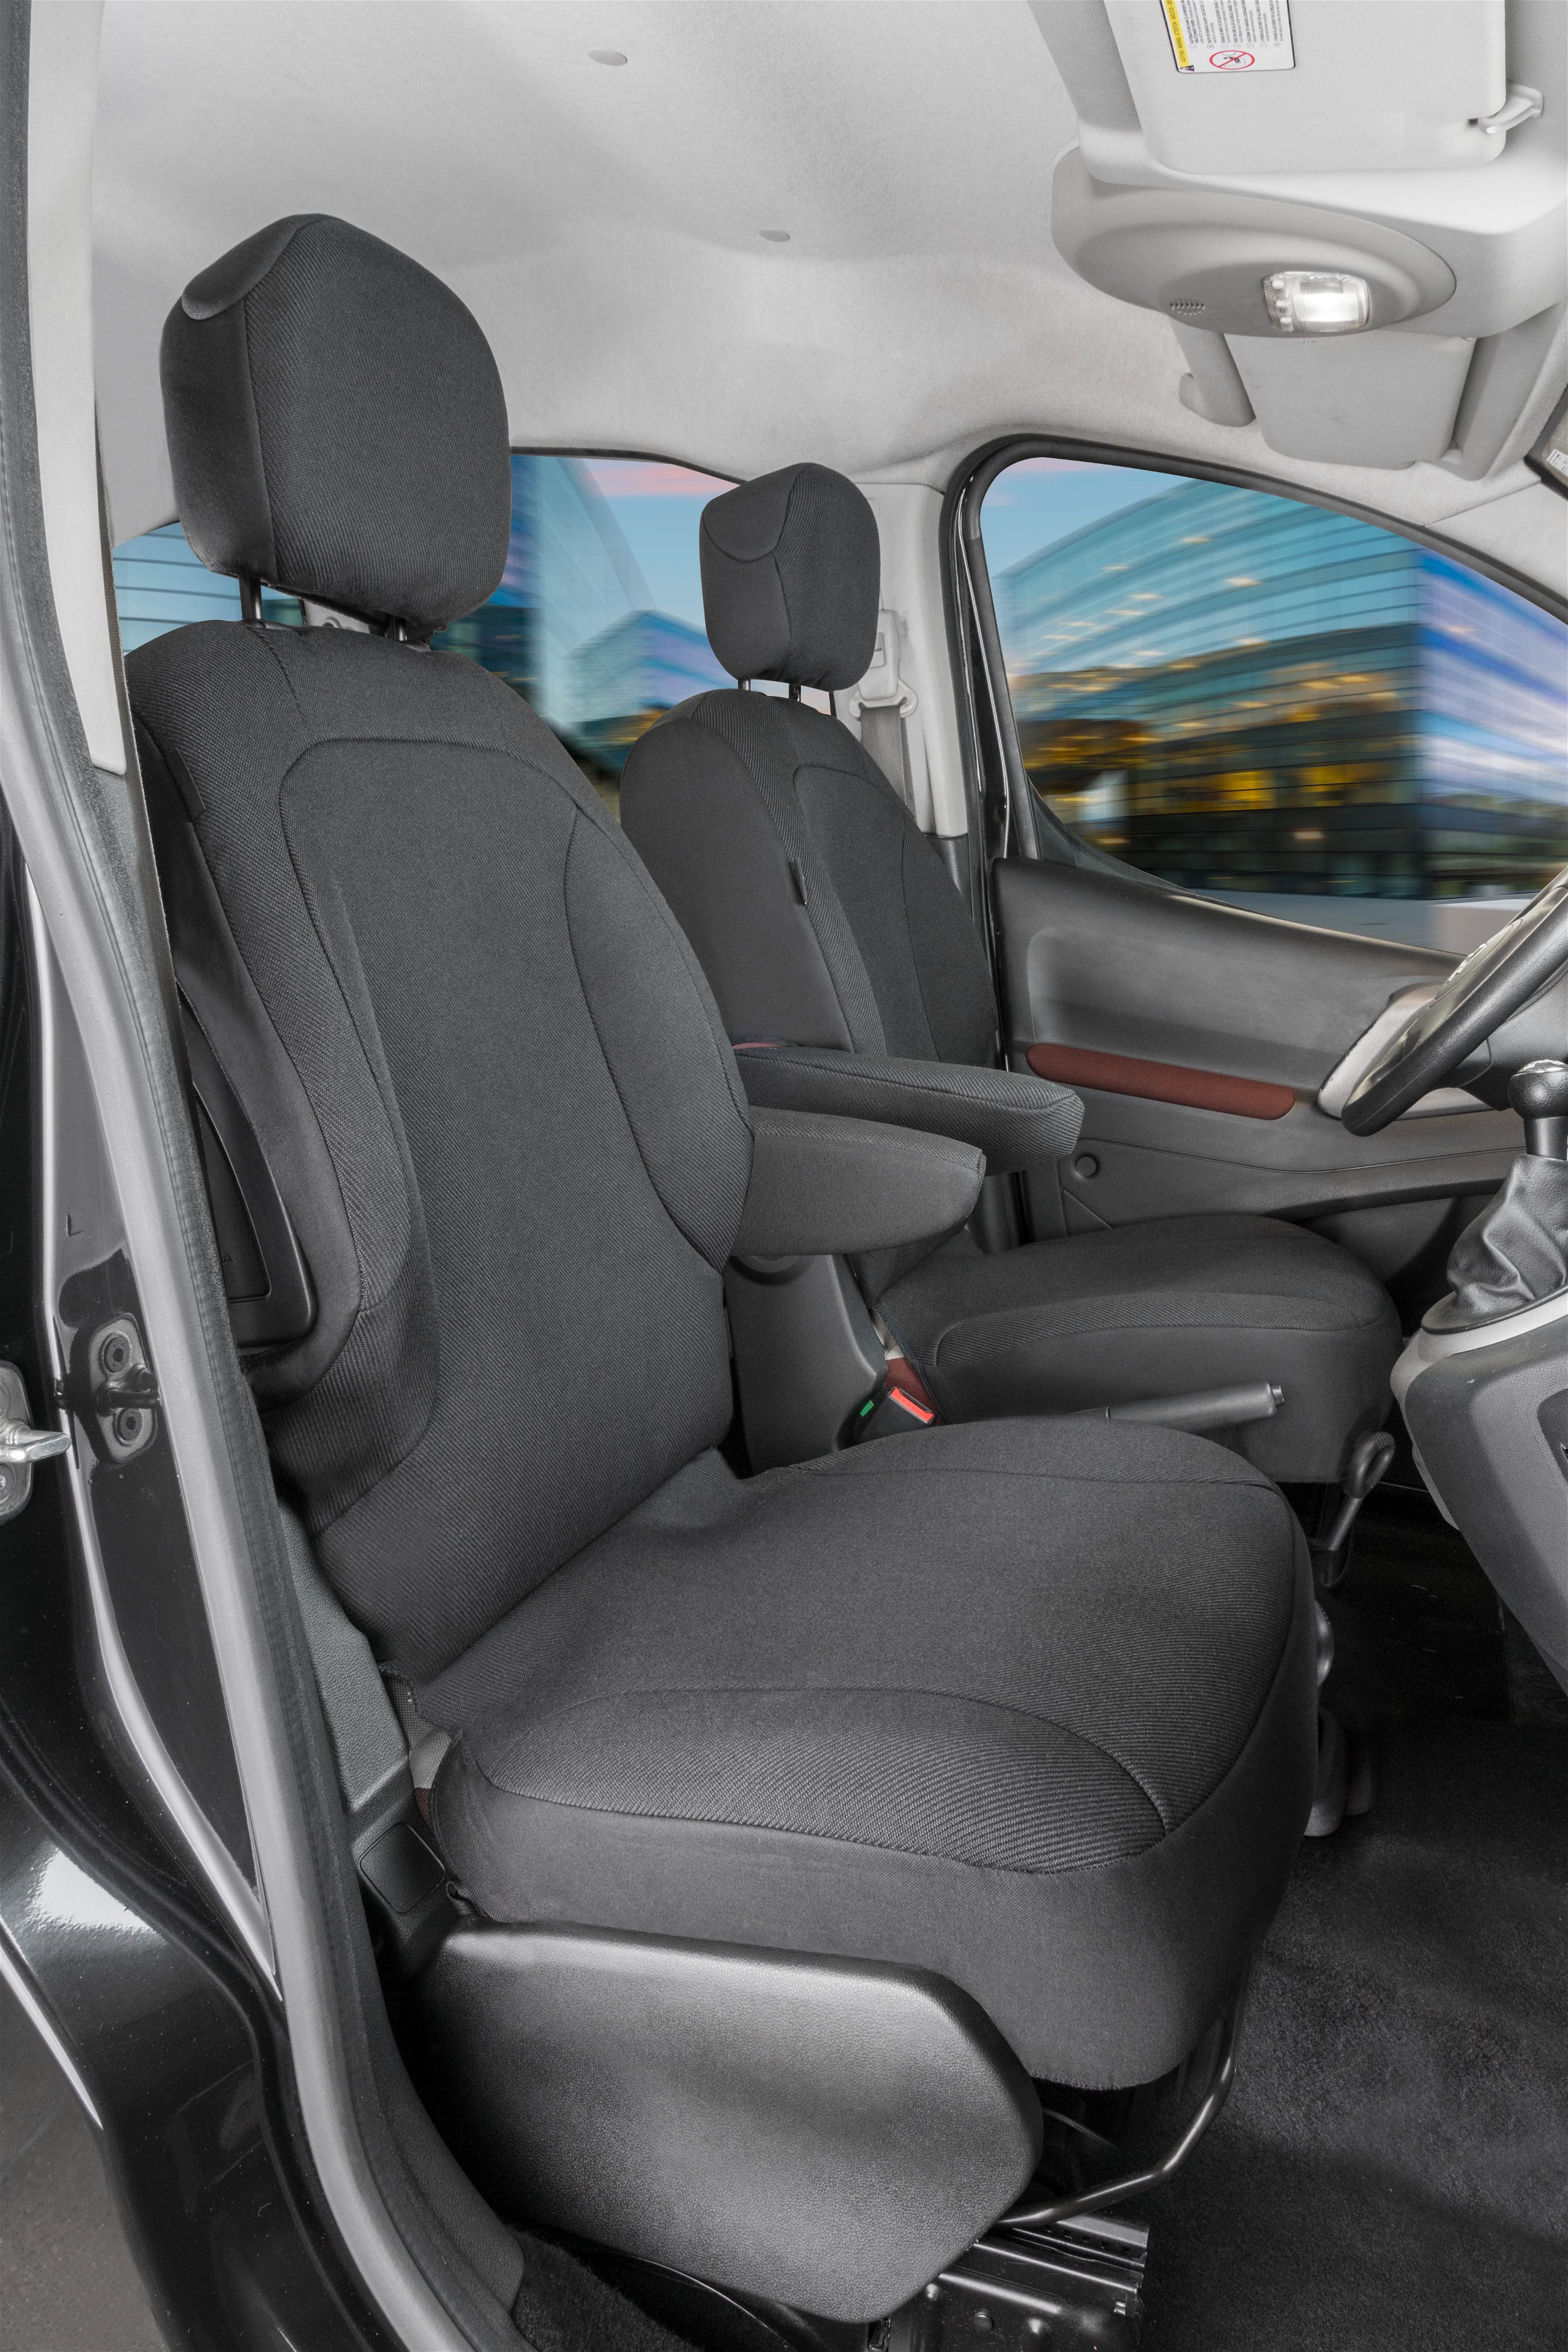 Passform Sitzbezug aus Stoff kompatibel mit Peugeot Partner, 2 Einzelsitze Armlehne innen